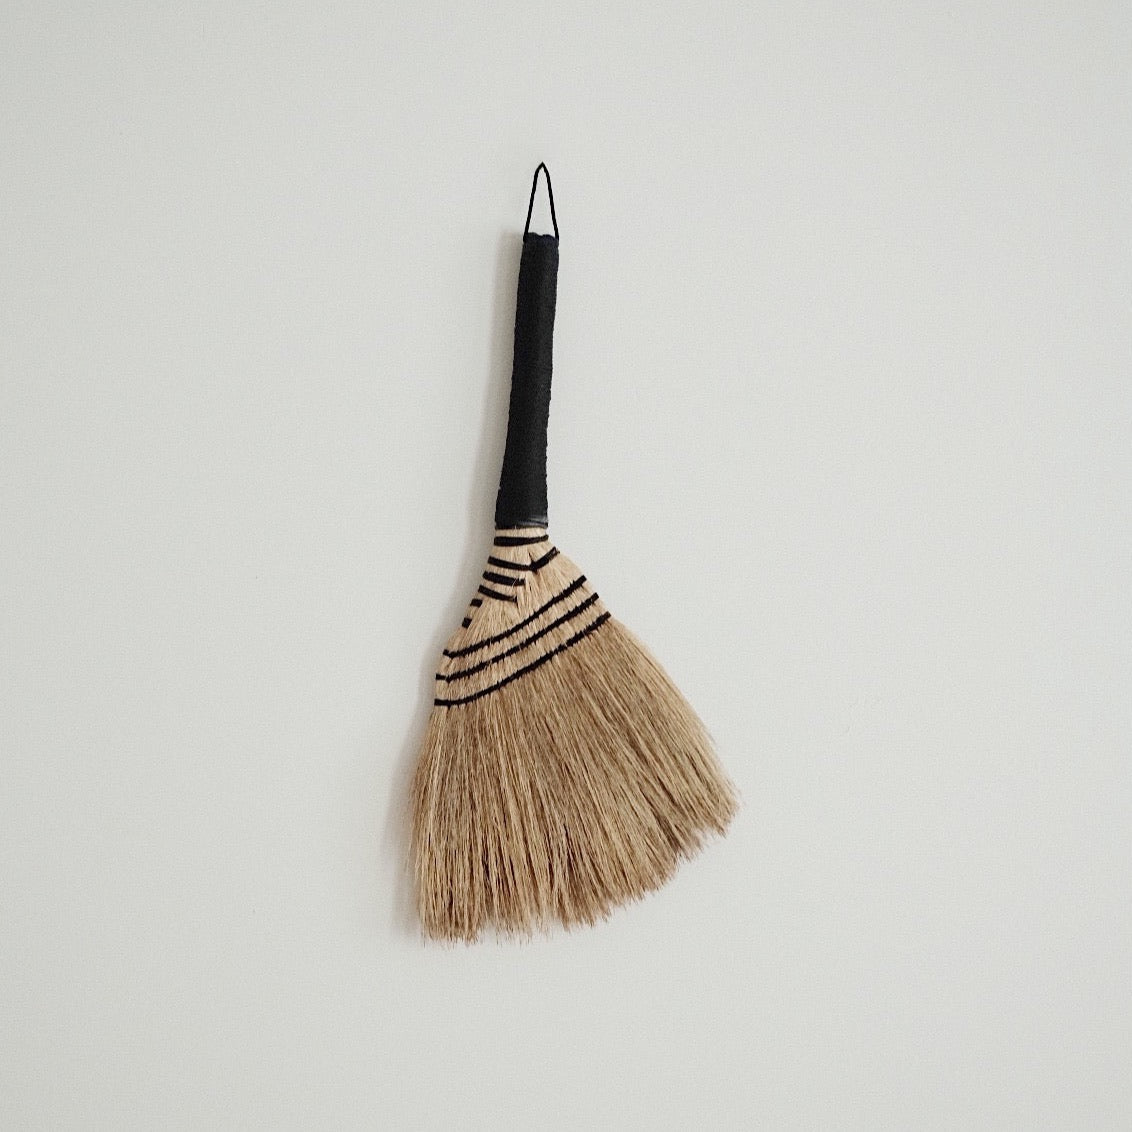 Small Broom Bitjaru(firm) - Black